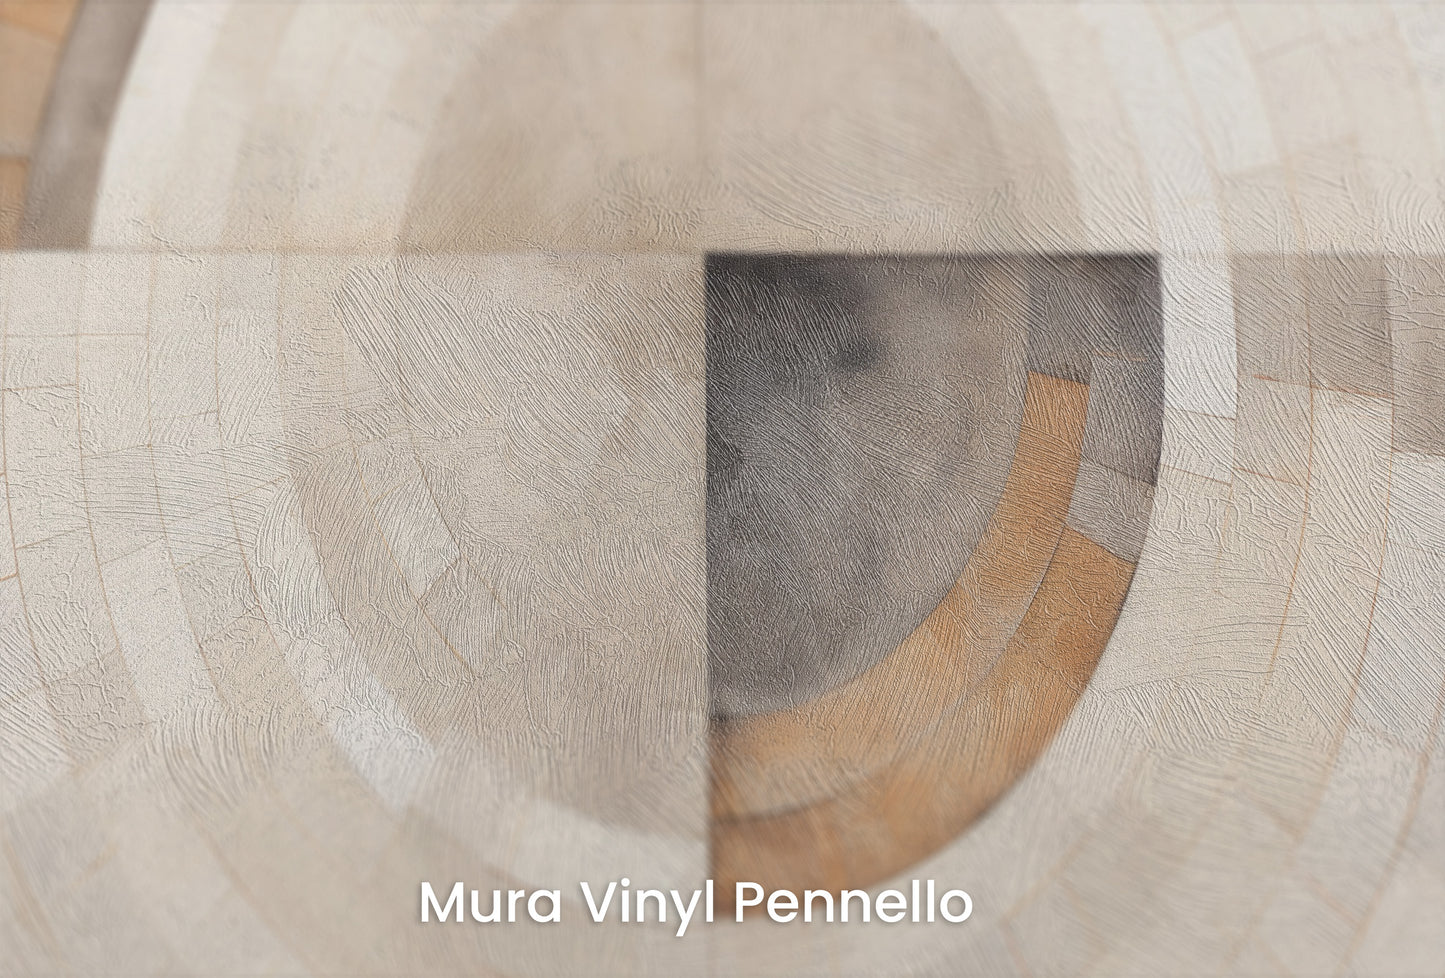 Zbliżenie na artystyczną fototapetę o nazwie MONOCHROME ECLIPSE MOSAIC na podłożu Mura Vinyl Pennello - faktura pociągnięć pędzla malarskiego.